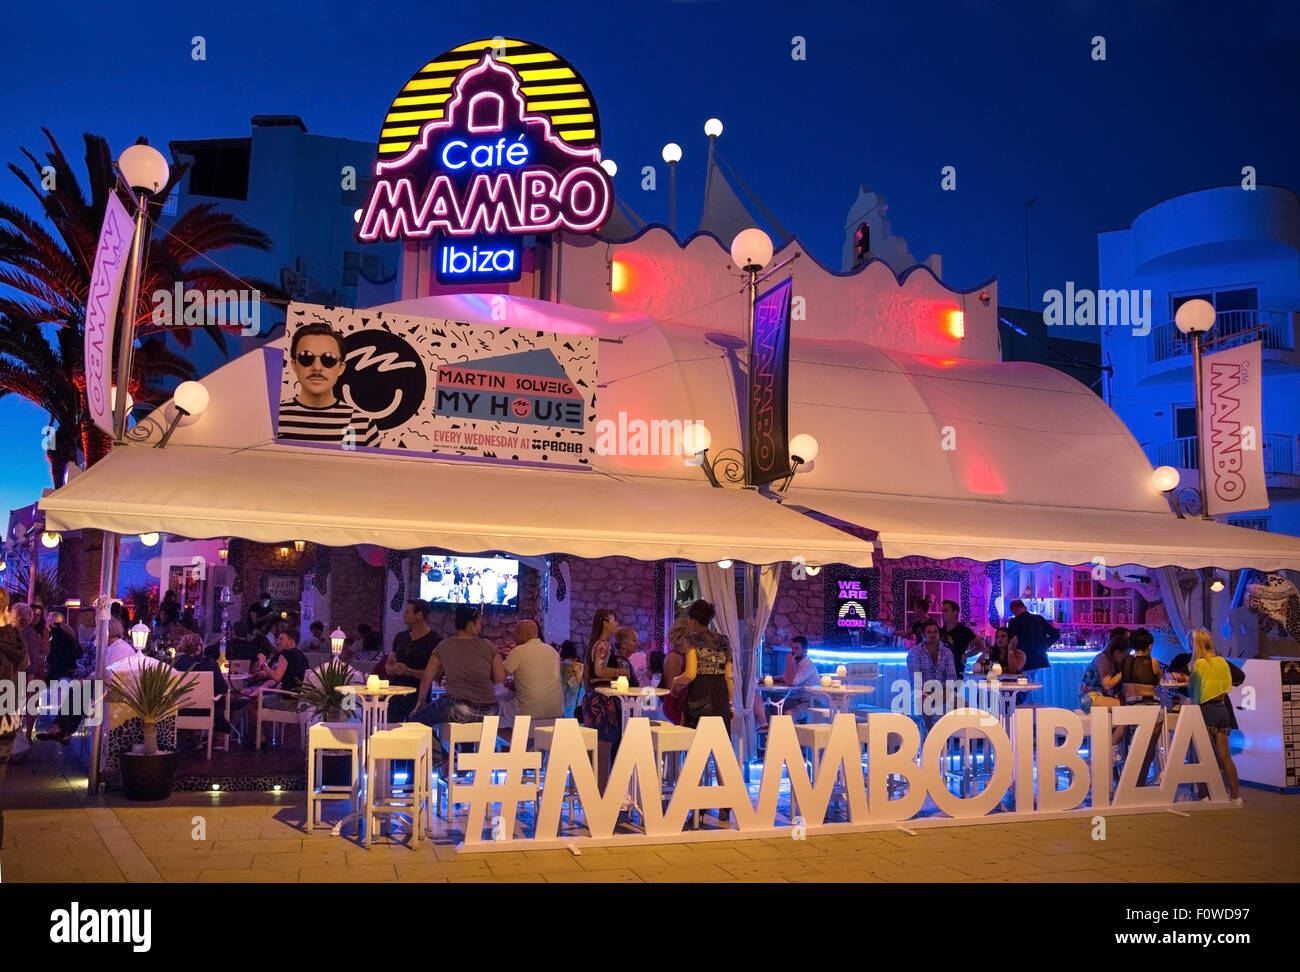 Cafe Mambo in Ibiza Stock Photo